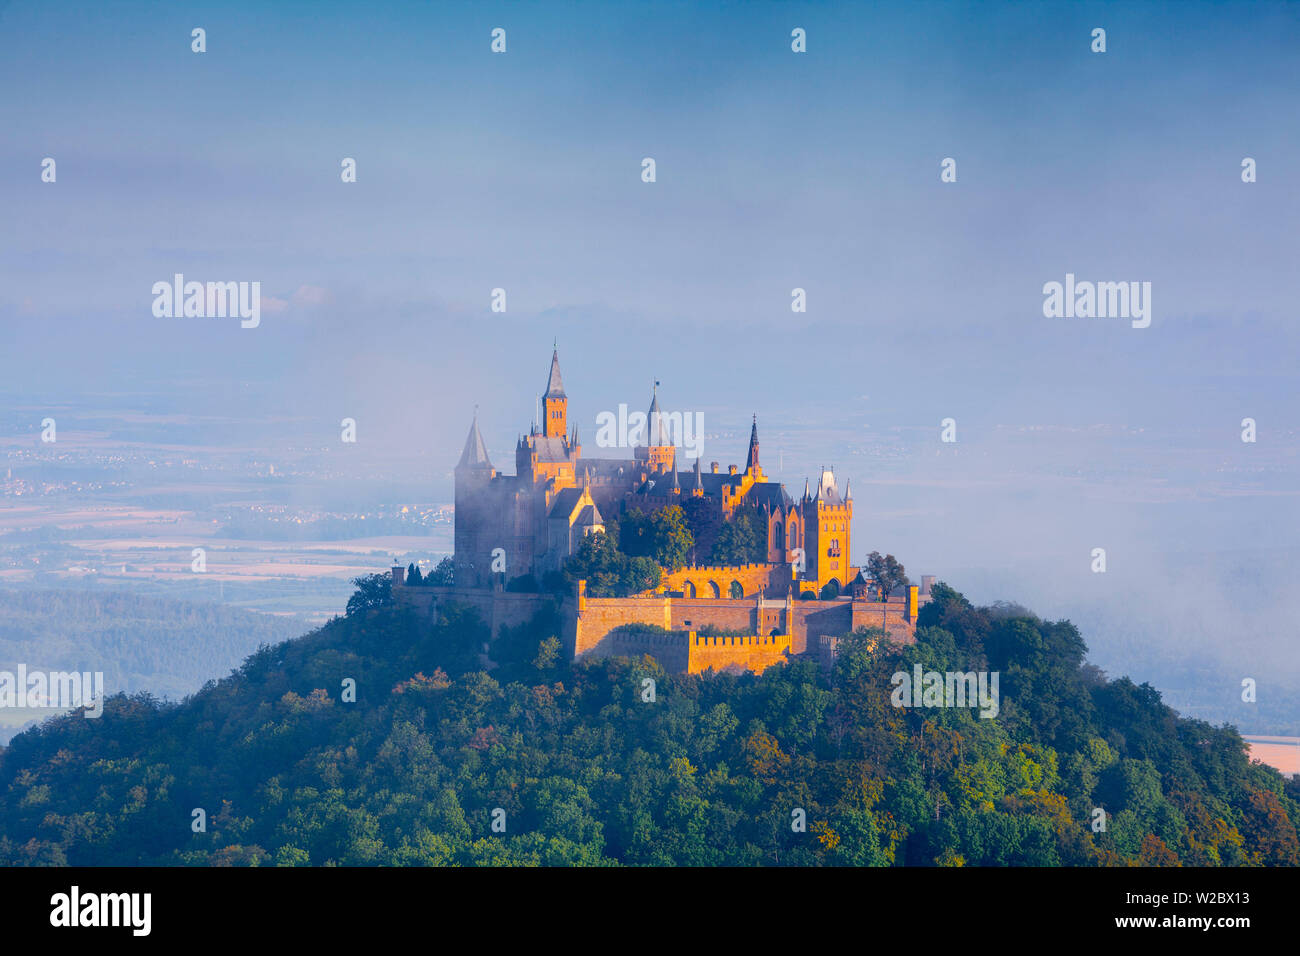 View vers le Château de Hohenzollern allumé au lever du soleil, souabe, Bade-Wurtemberg, Allemagne Banque D'Images